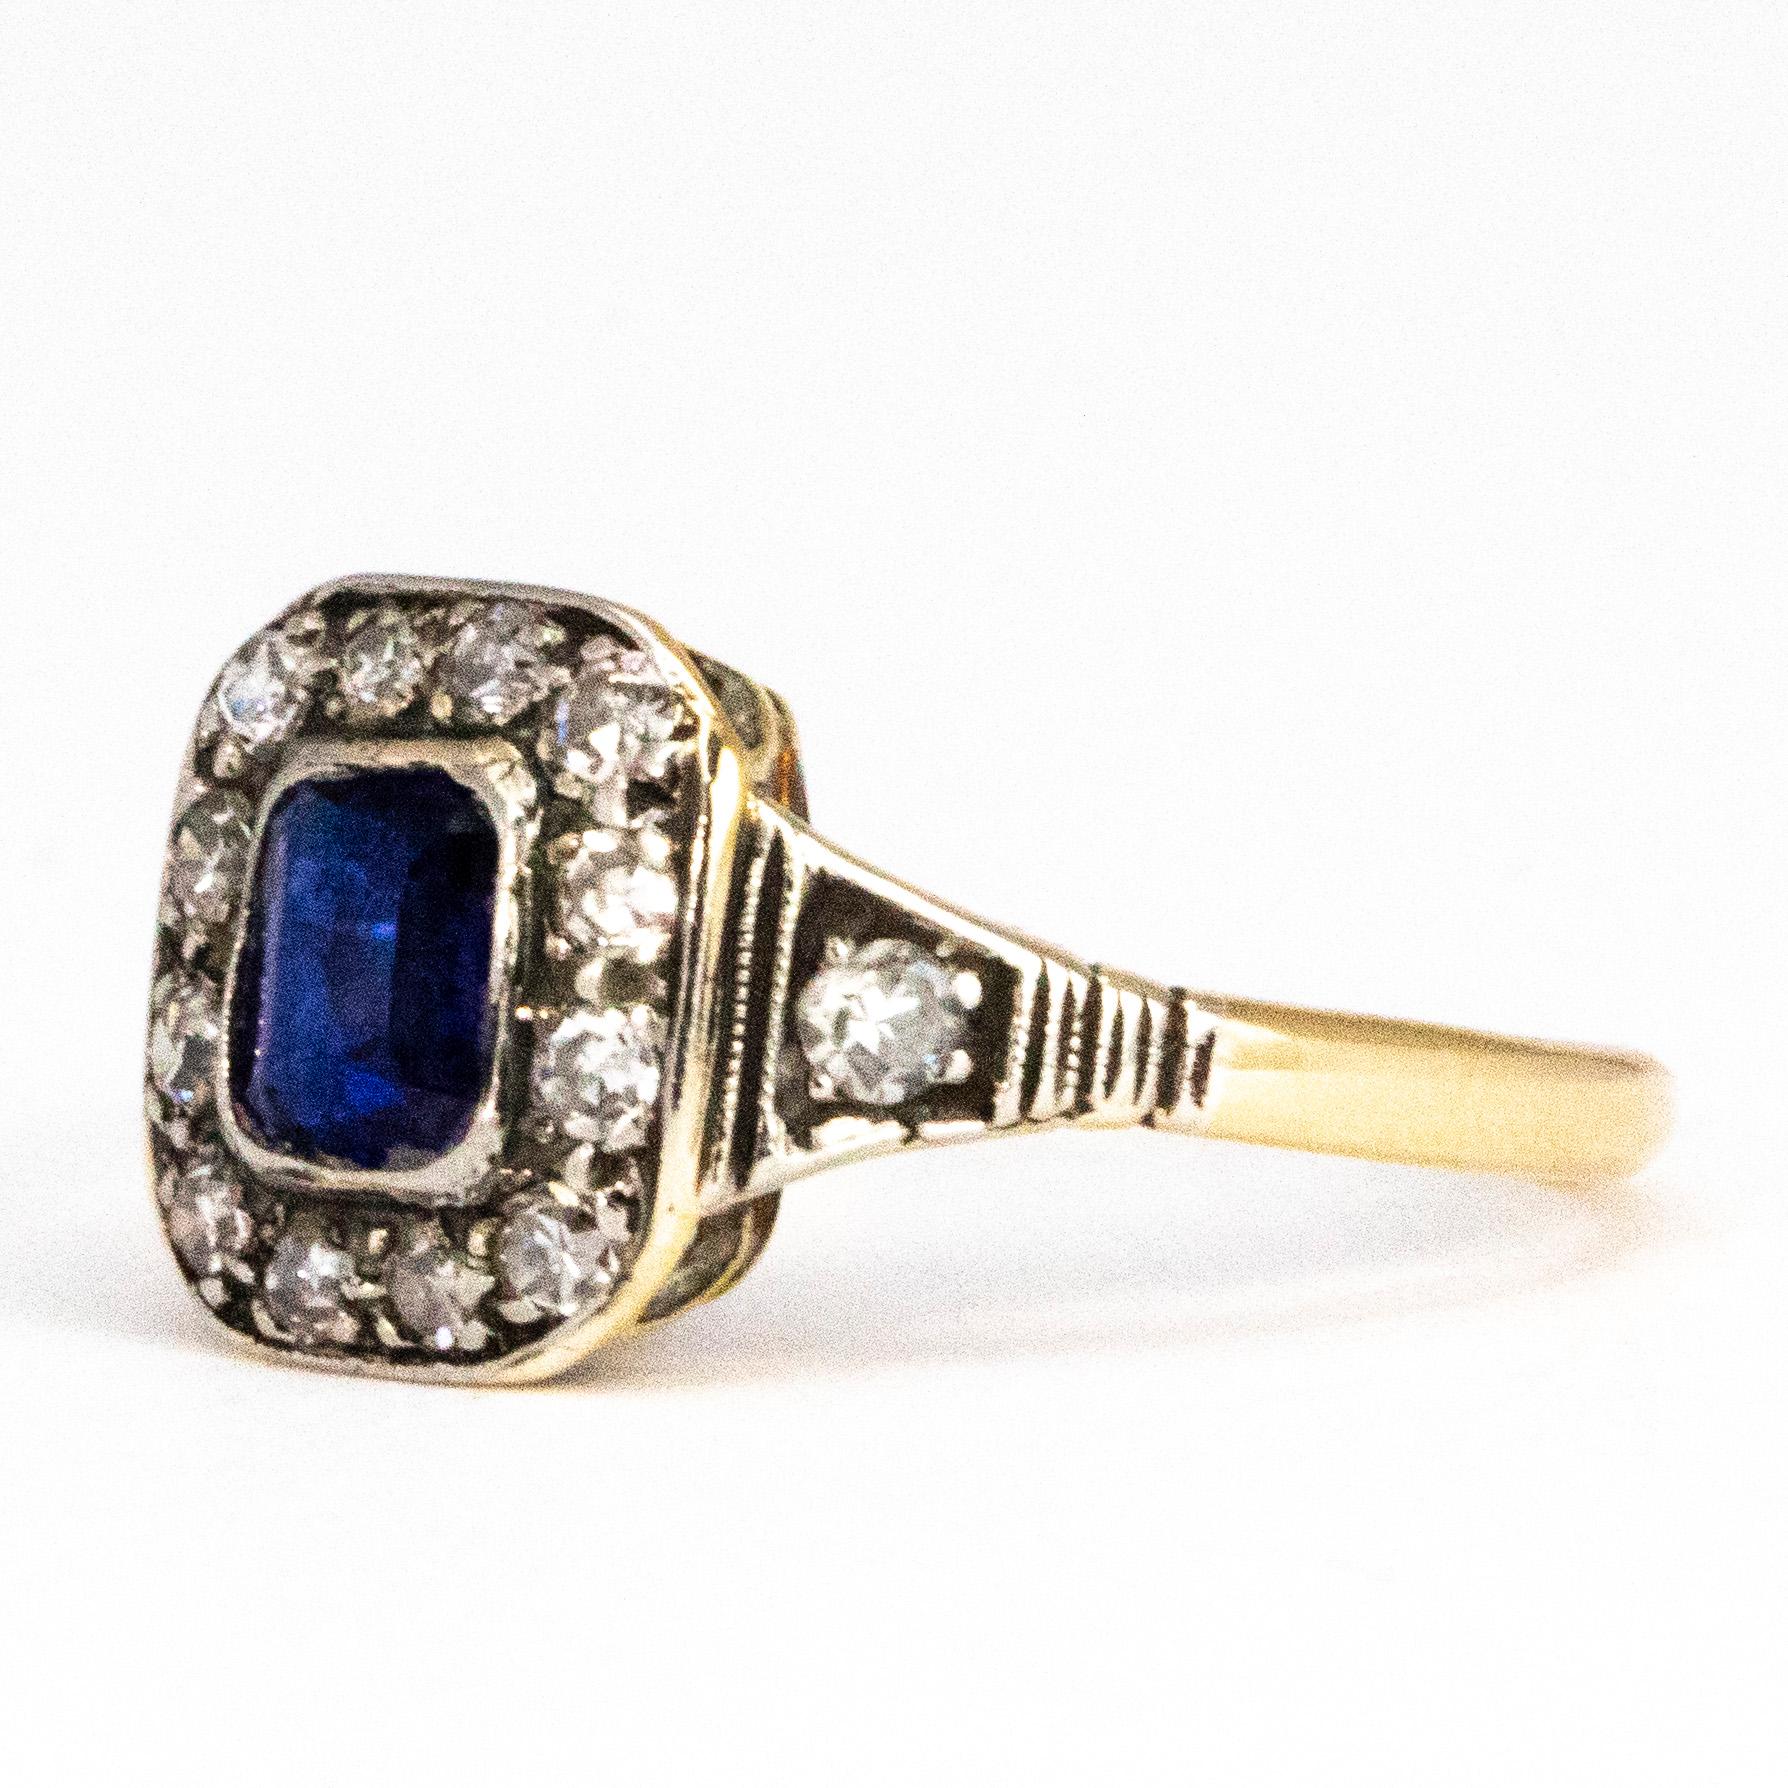 Dieser Ring hat einen sehr klassischen Stil. Der Mittelstein ist ein leuchtend blauer Saphir und wird von wunderschönen Diamanten umgeben. Der Saphir misst 20 Pence und die Diamanten jeweils 3 Pence. 

Ringgröße: K 1/2 oder 5 1/2 
Cluster